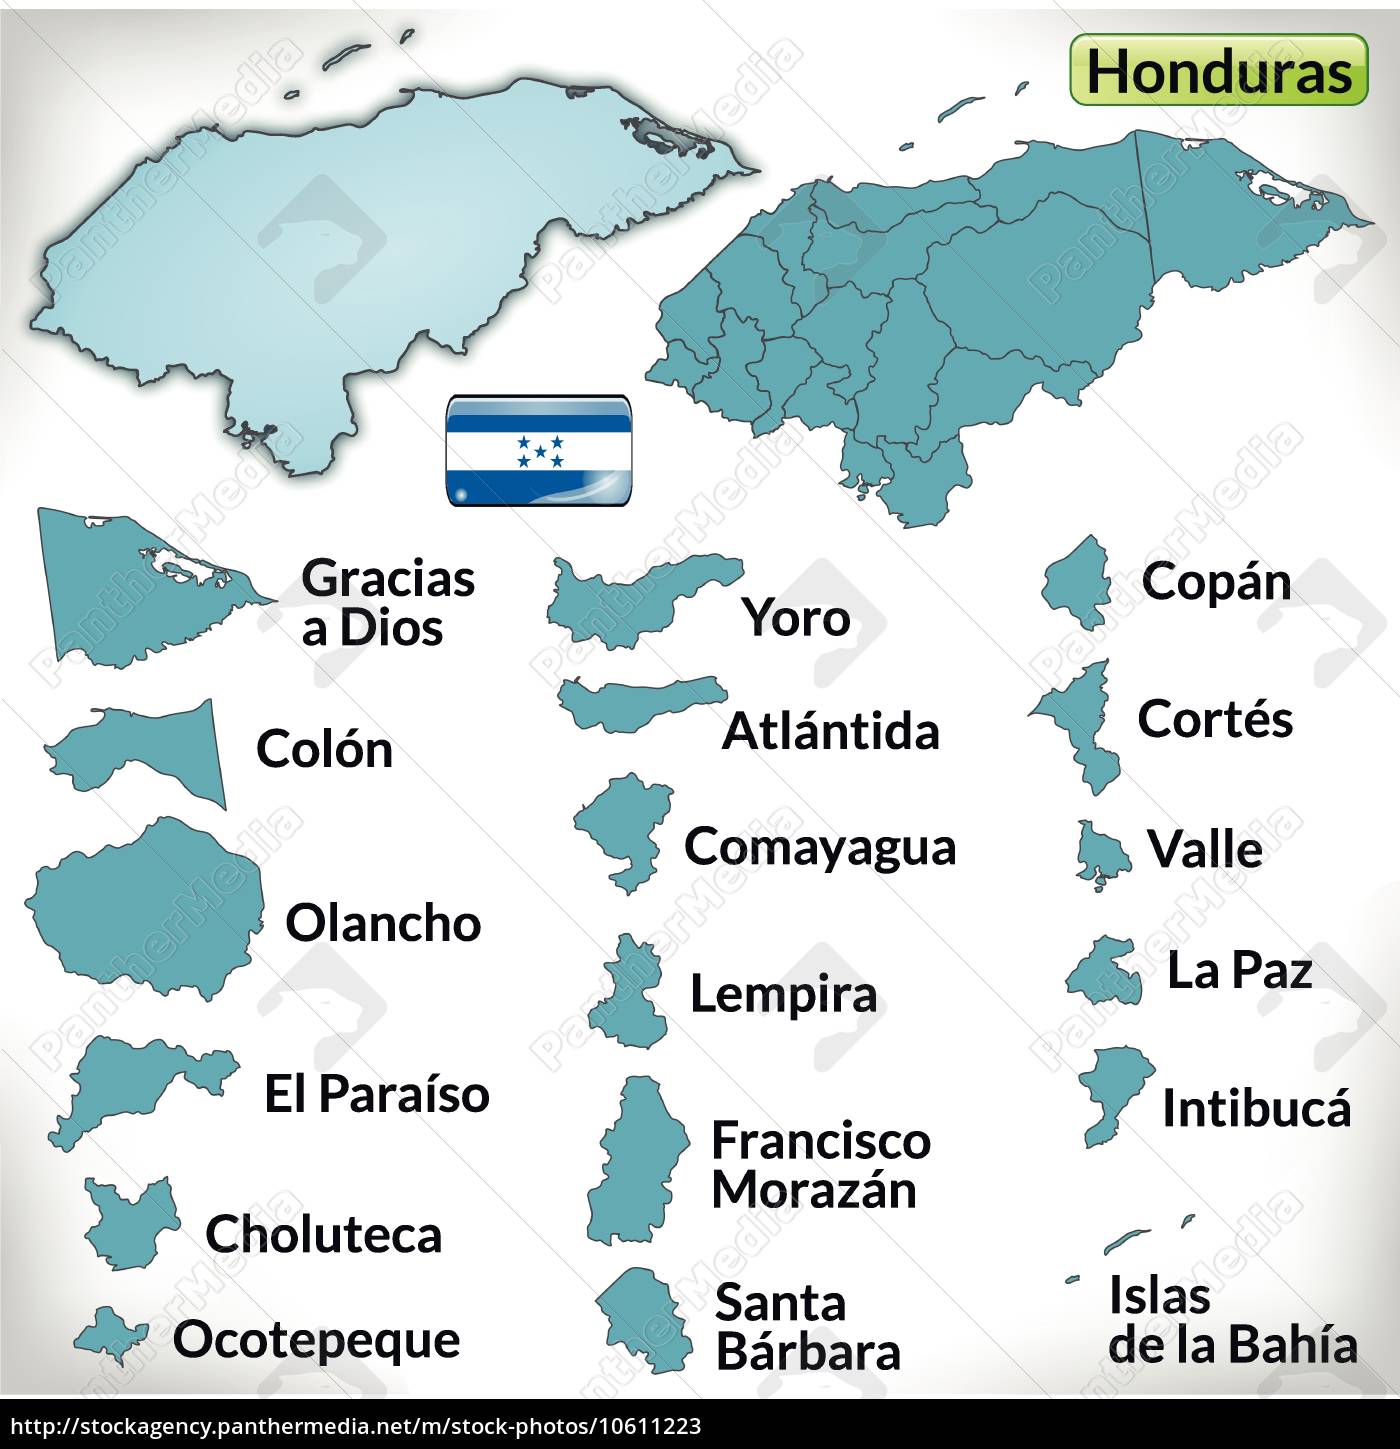 Kort Over Honduras kort over honduras med kanter i blå   Royalty Free Image  Kort Over Honduras